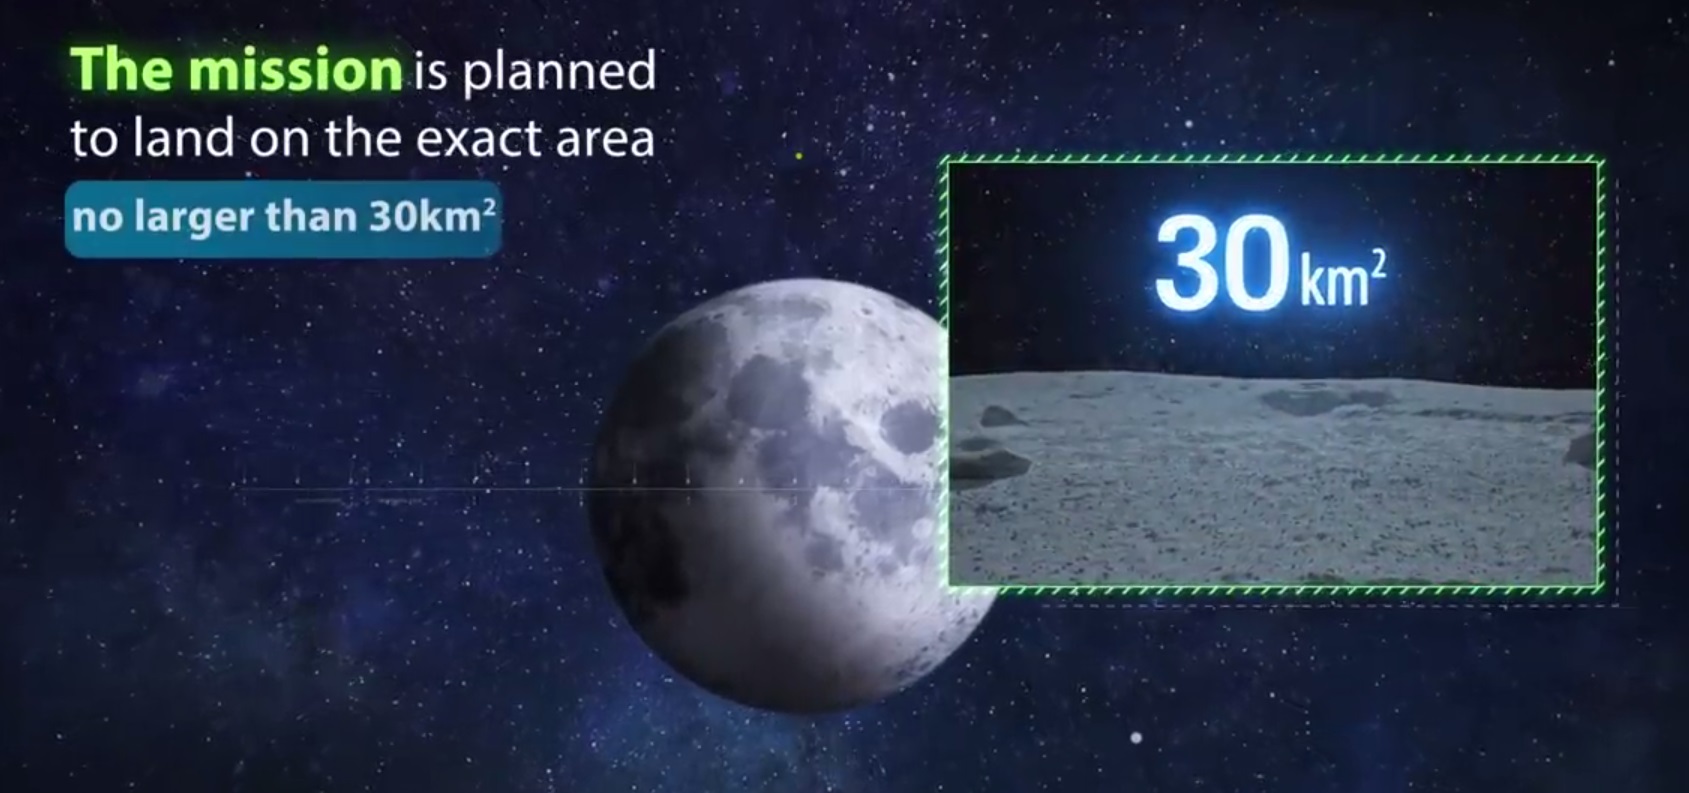 Лунная миссия «Берешит» — 4 апреля 2019 совершен переход на лунную орбиту, впереди 7 дней полета, 6 маневров и 1 посадка - 53